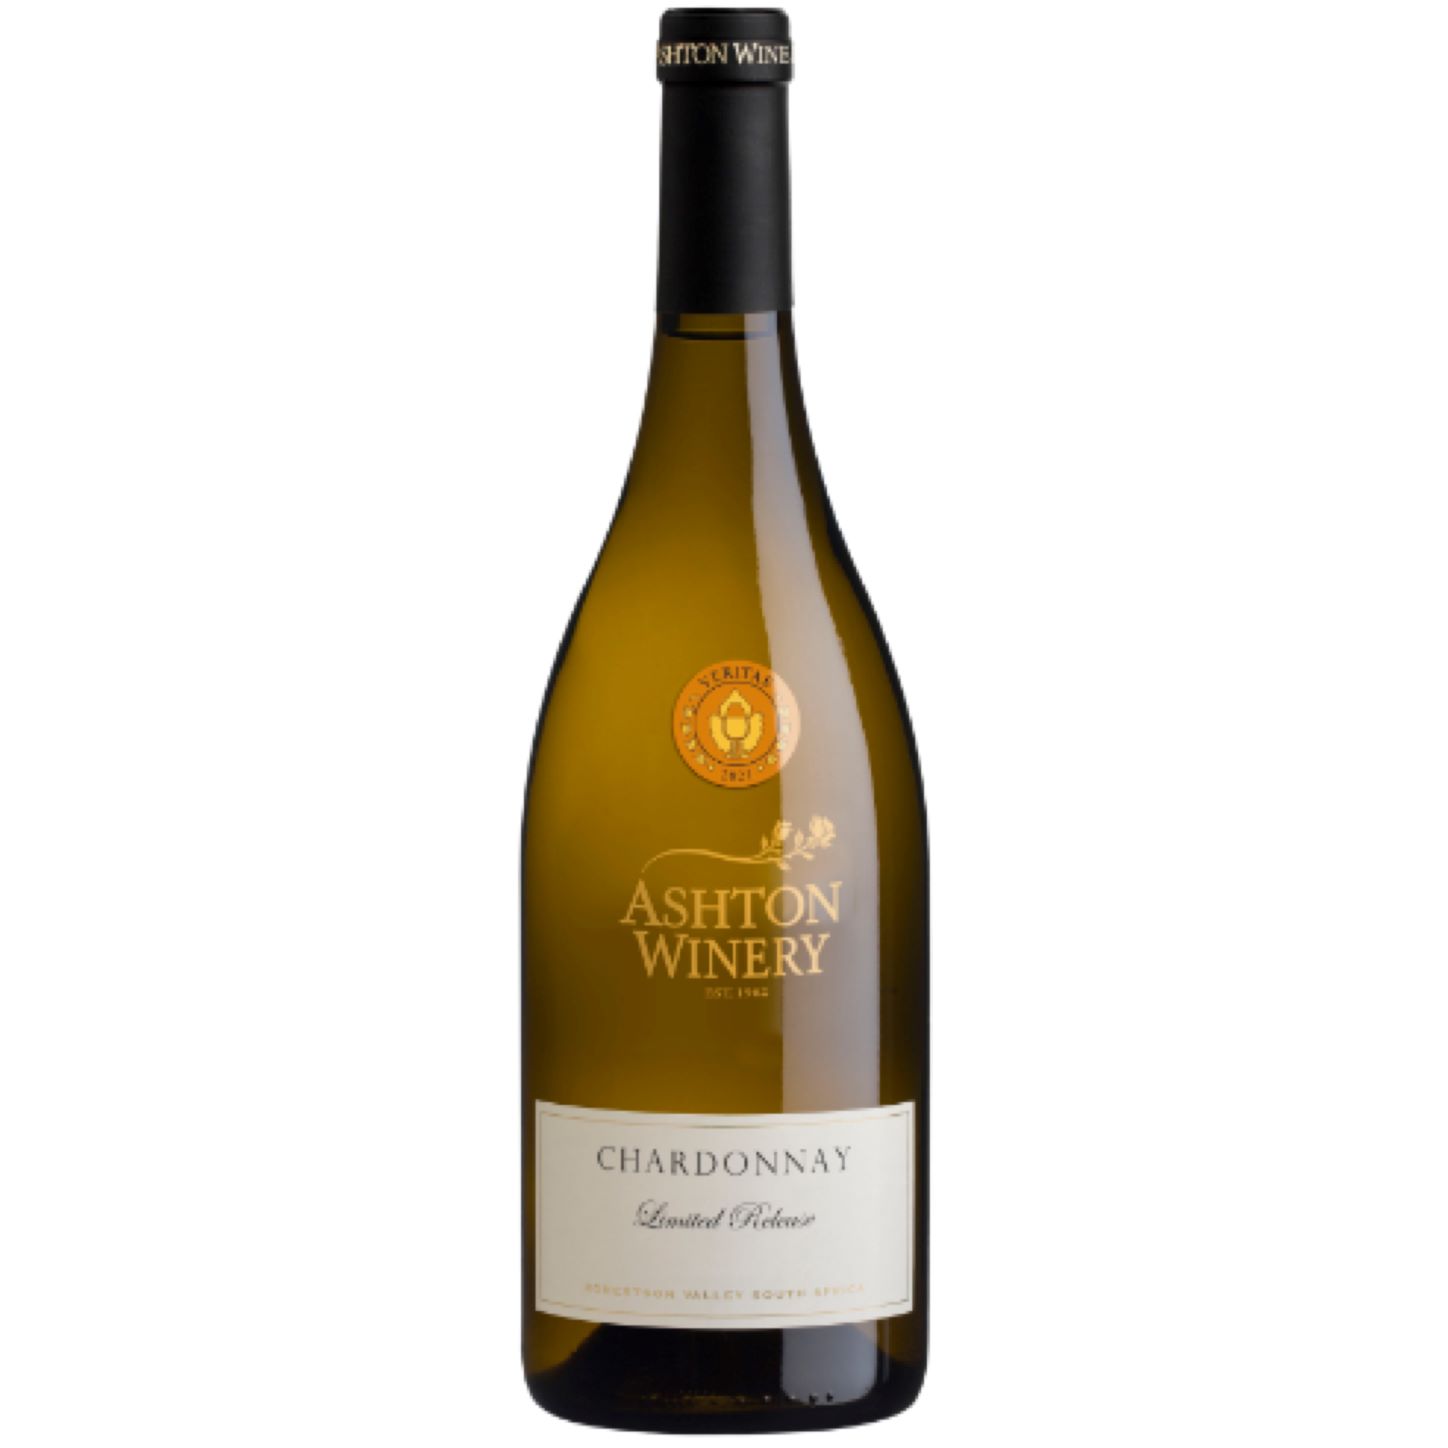 Ashton winery Chardonnay limited